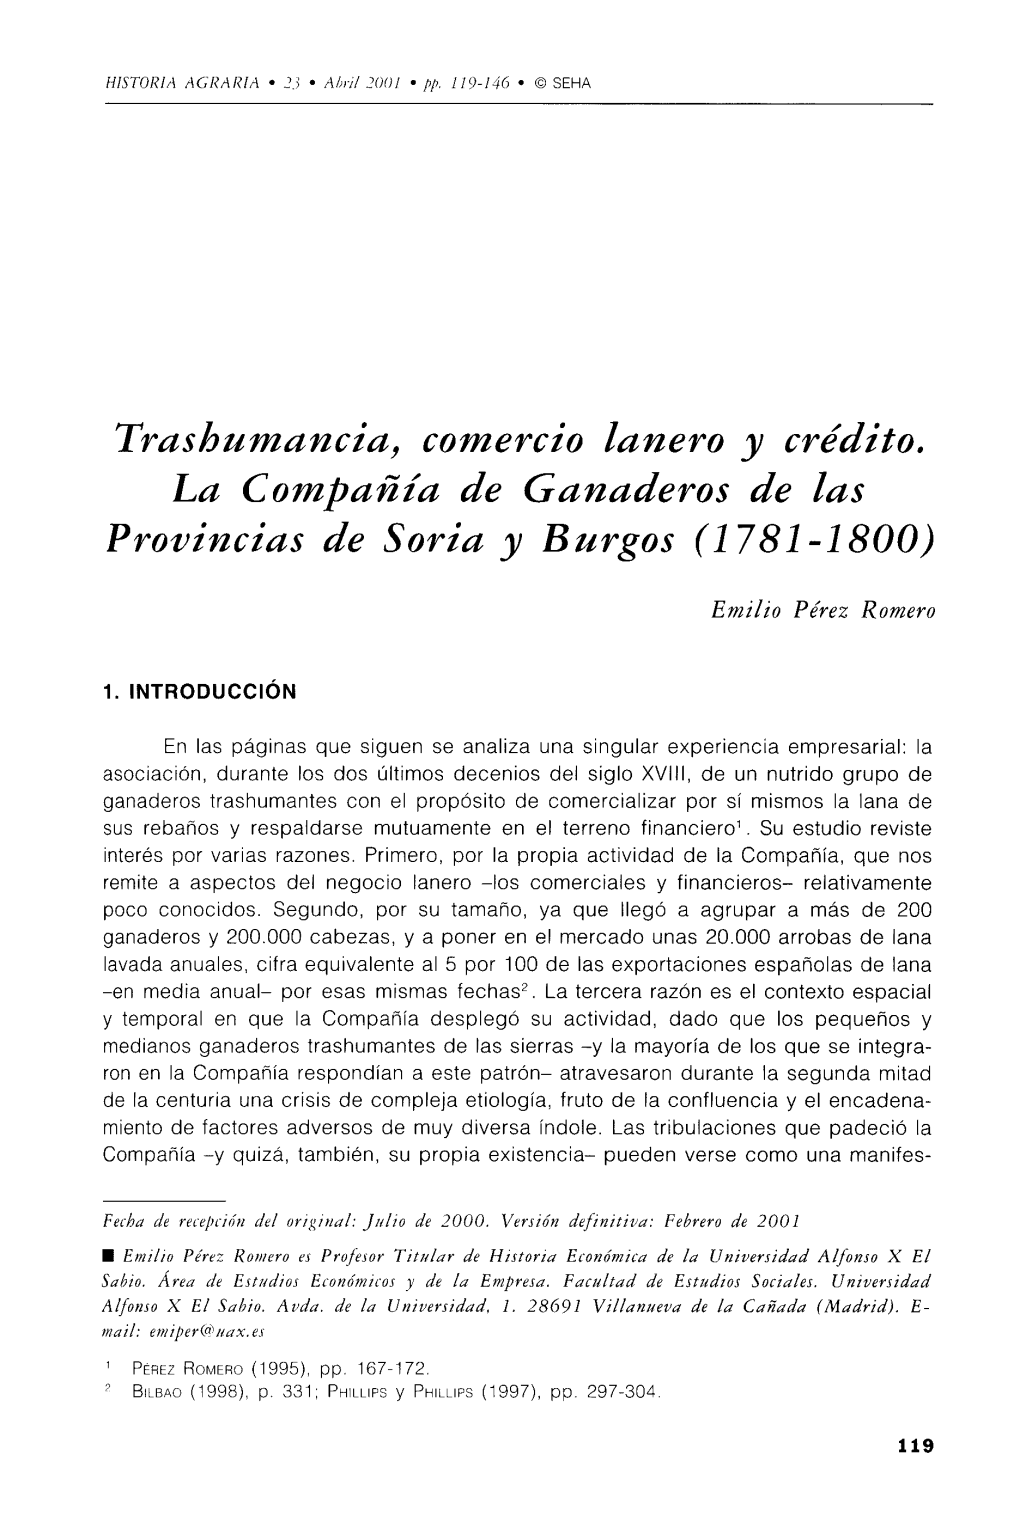 Trashumancia, Comercio Lanero Y Crédito. La Compañía De Ganaderos De Las Provincias De Soria Y Burgos (1 781 -1800)